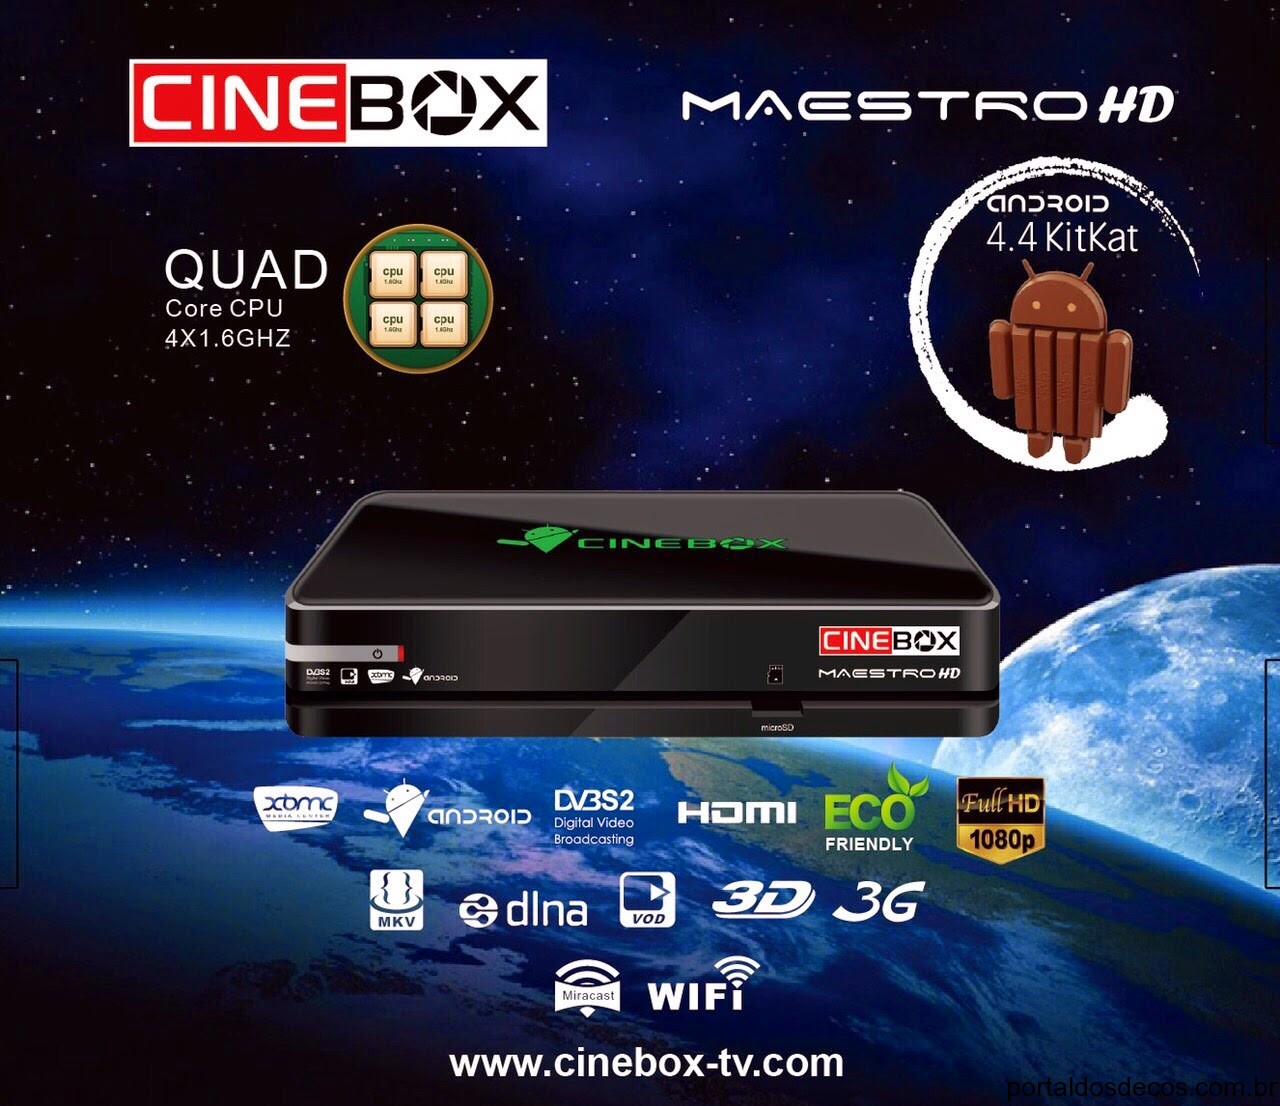 APLICATIVO: CINEBOX MAESTRO HD PROGRAMA PARA ASSISTIR NO CELULAR  30/03/2016